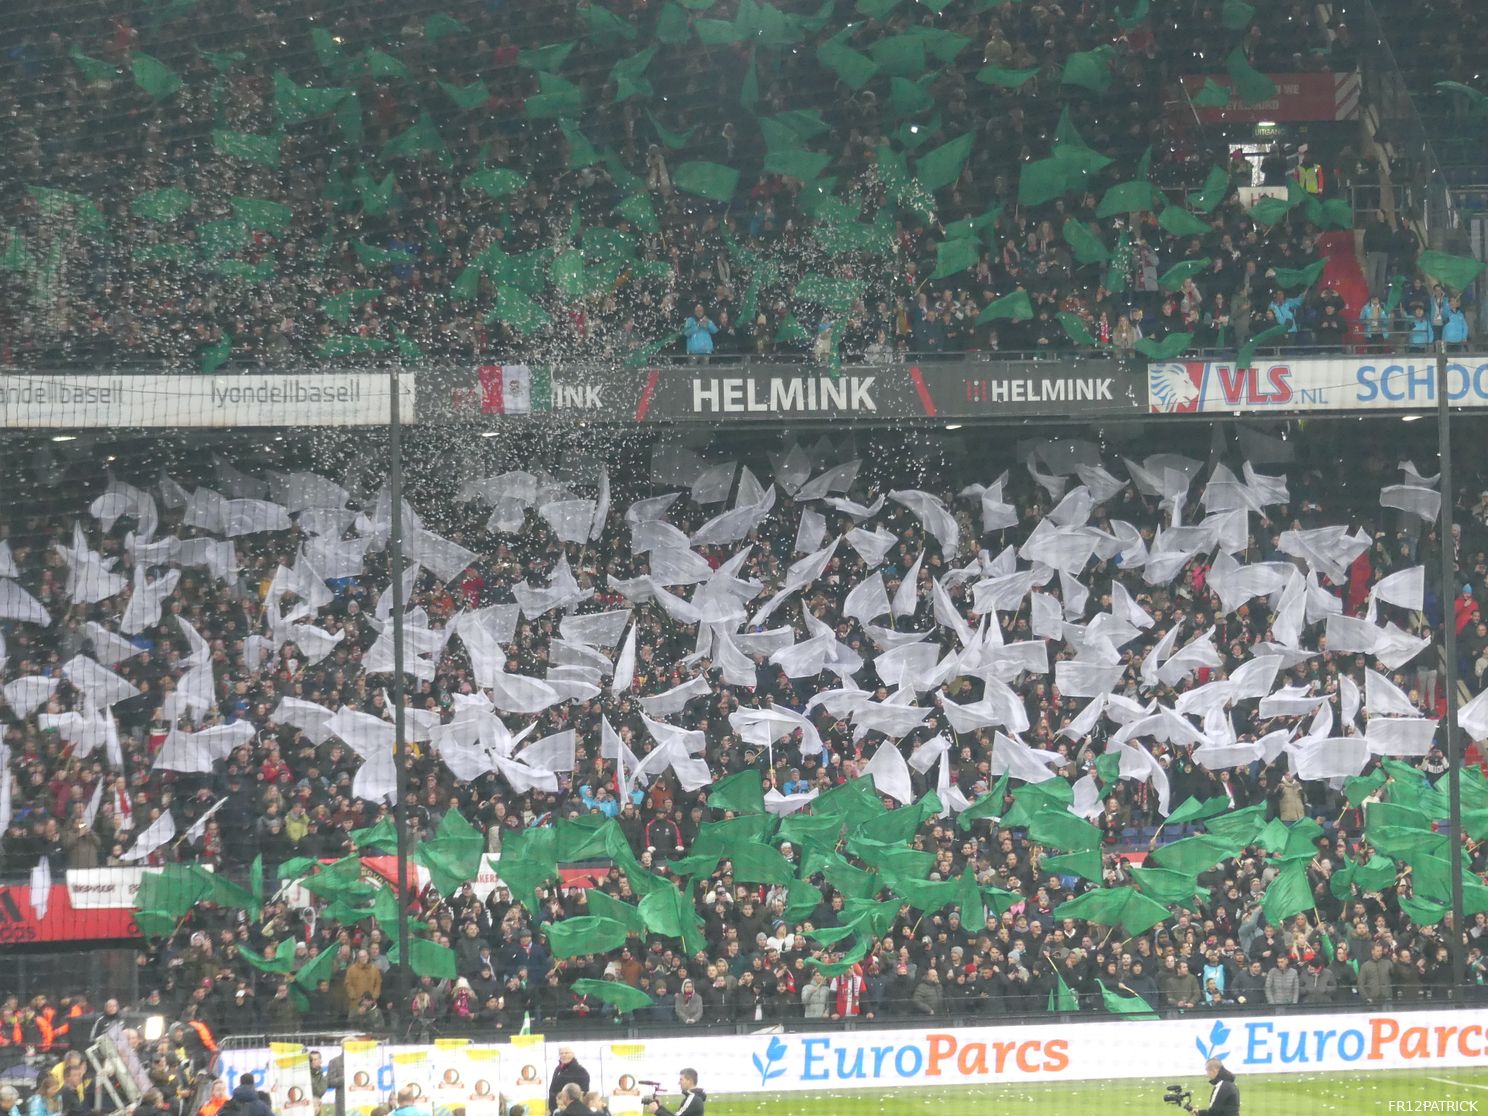 Das Rot-Weiß-Schwarz von Feyenoord und das Grün-Weiß-Grün von Rotterdam.